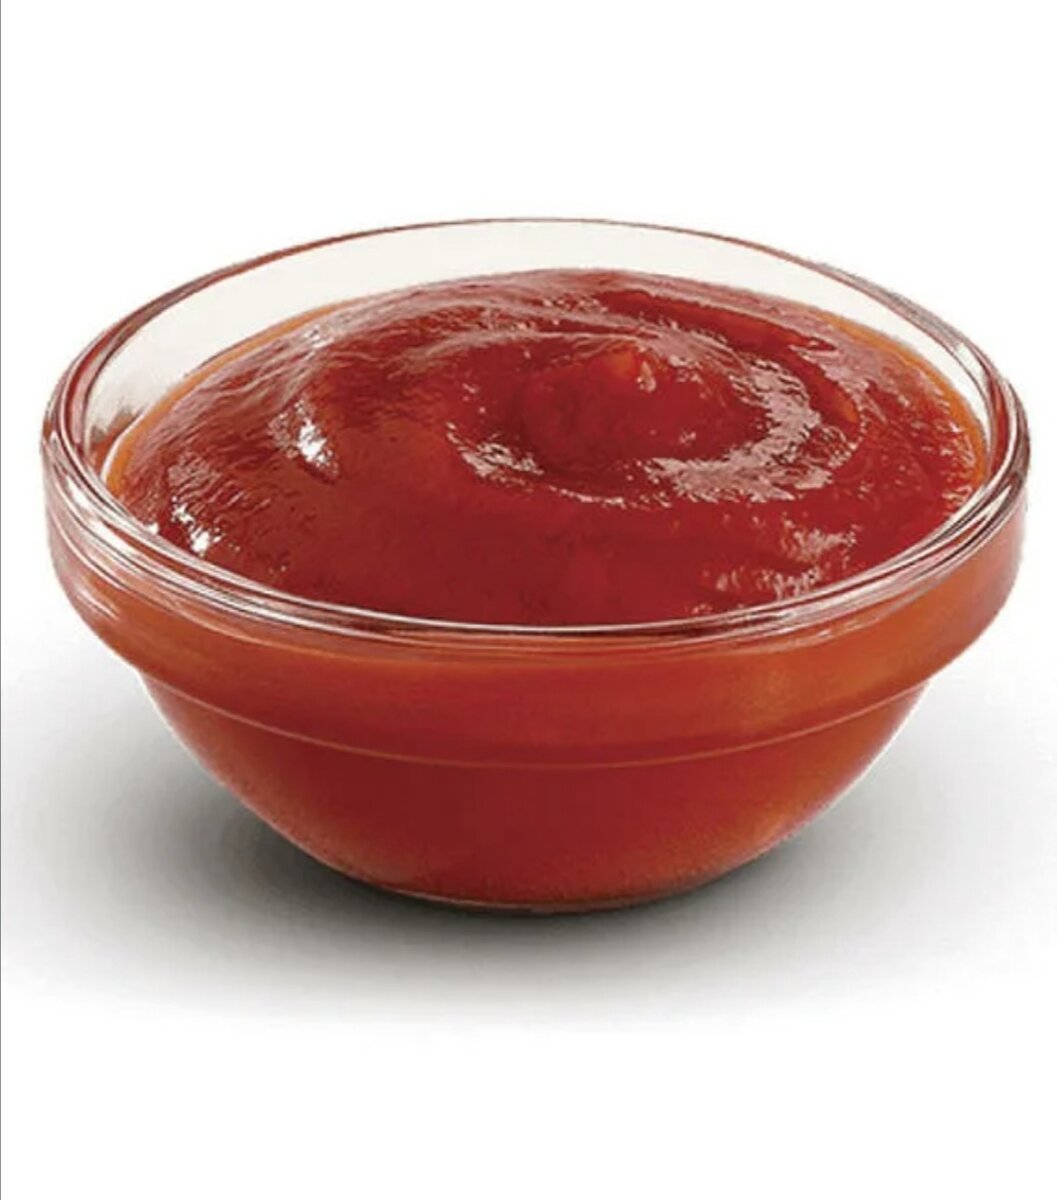 томатный соус к пицце из помидор фото 61